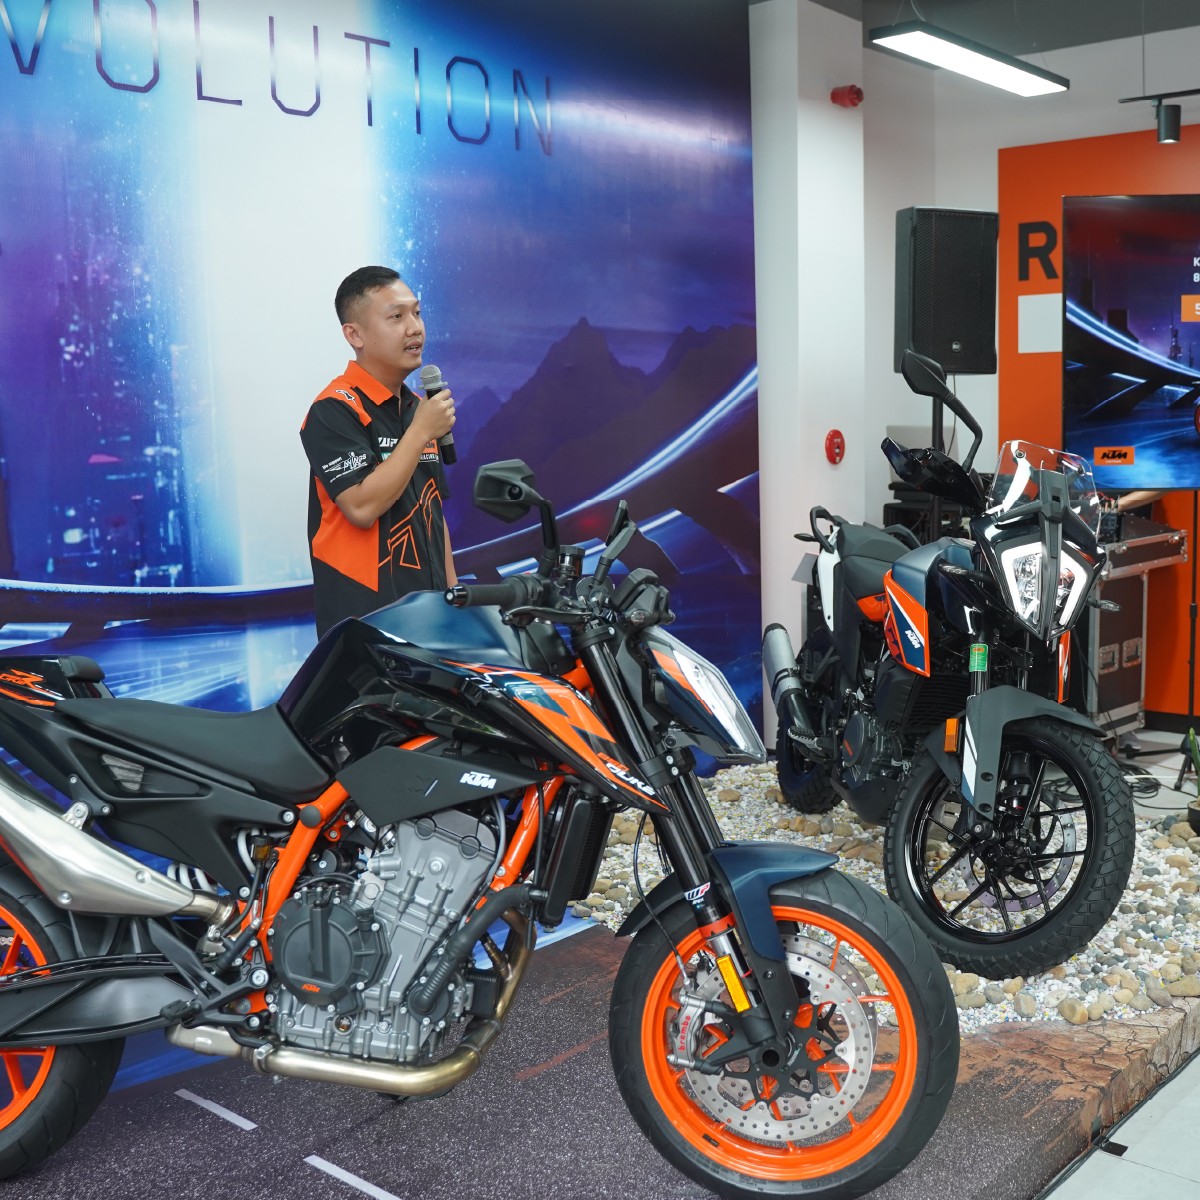 KTM giới thiệu bộ đôi 890 Duke R 2022 và KTM 390 Adventure 2022 tại Việt Nam